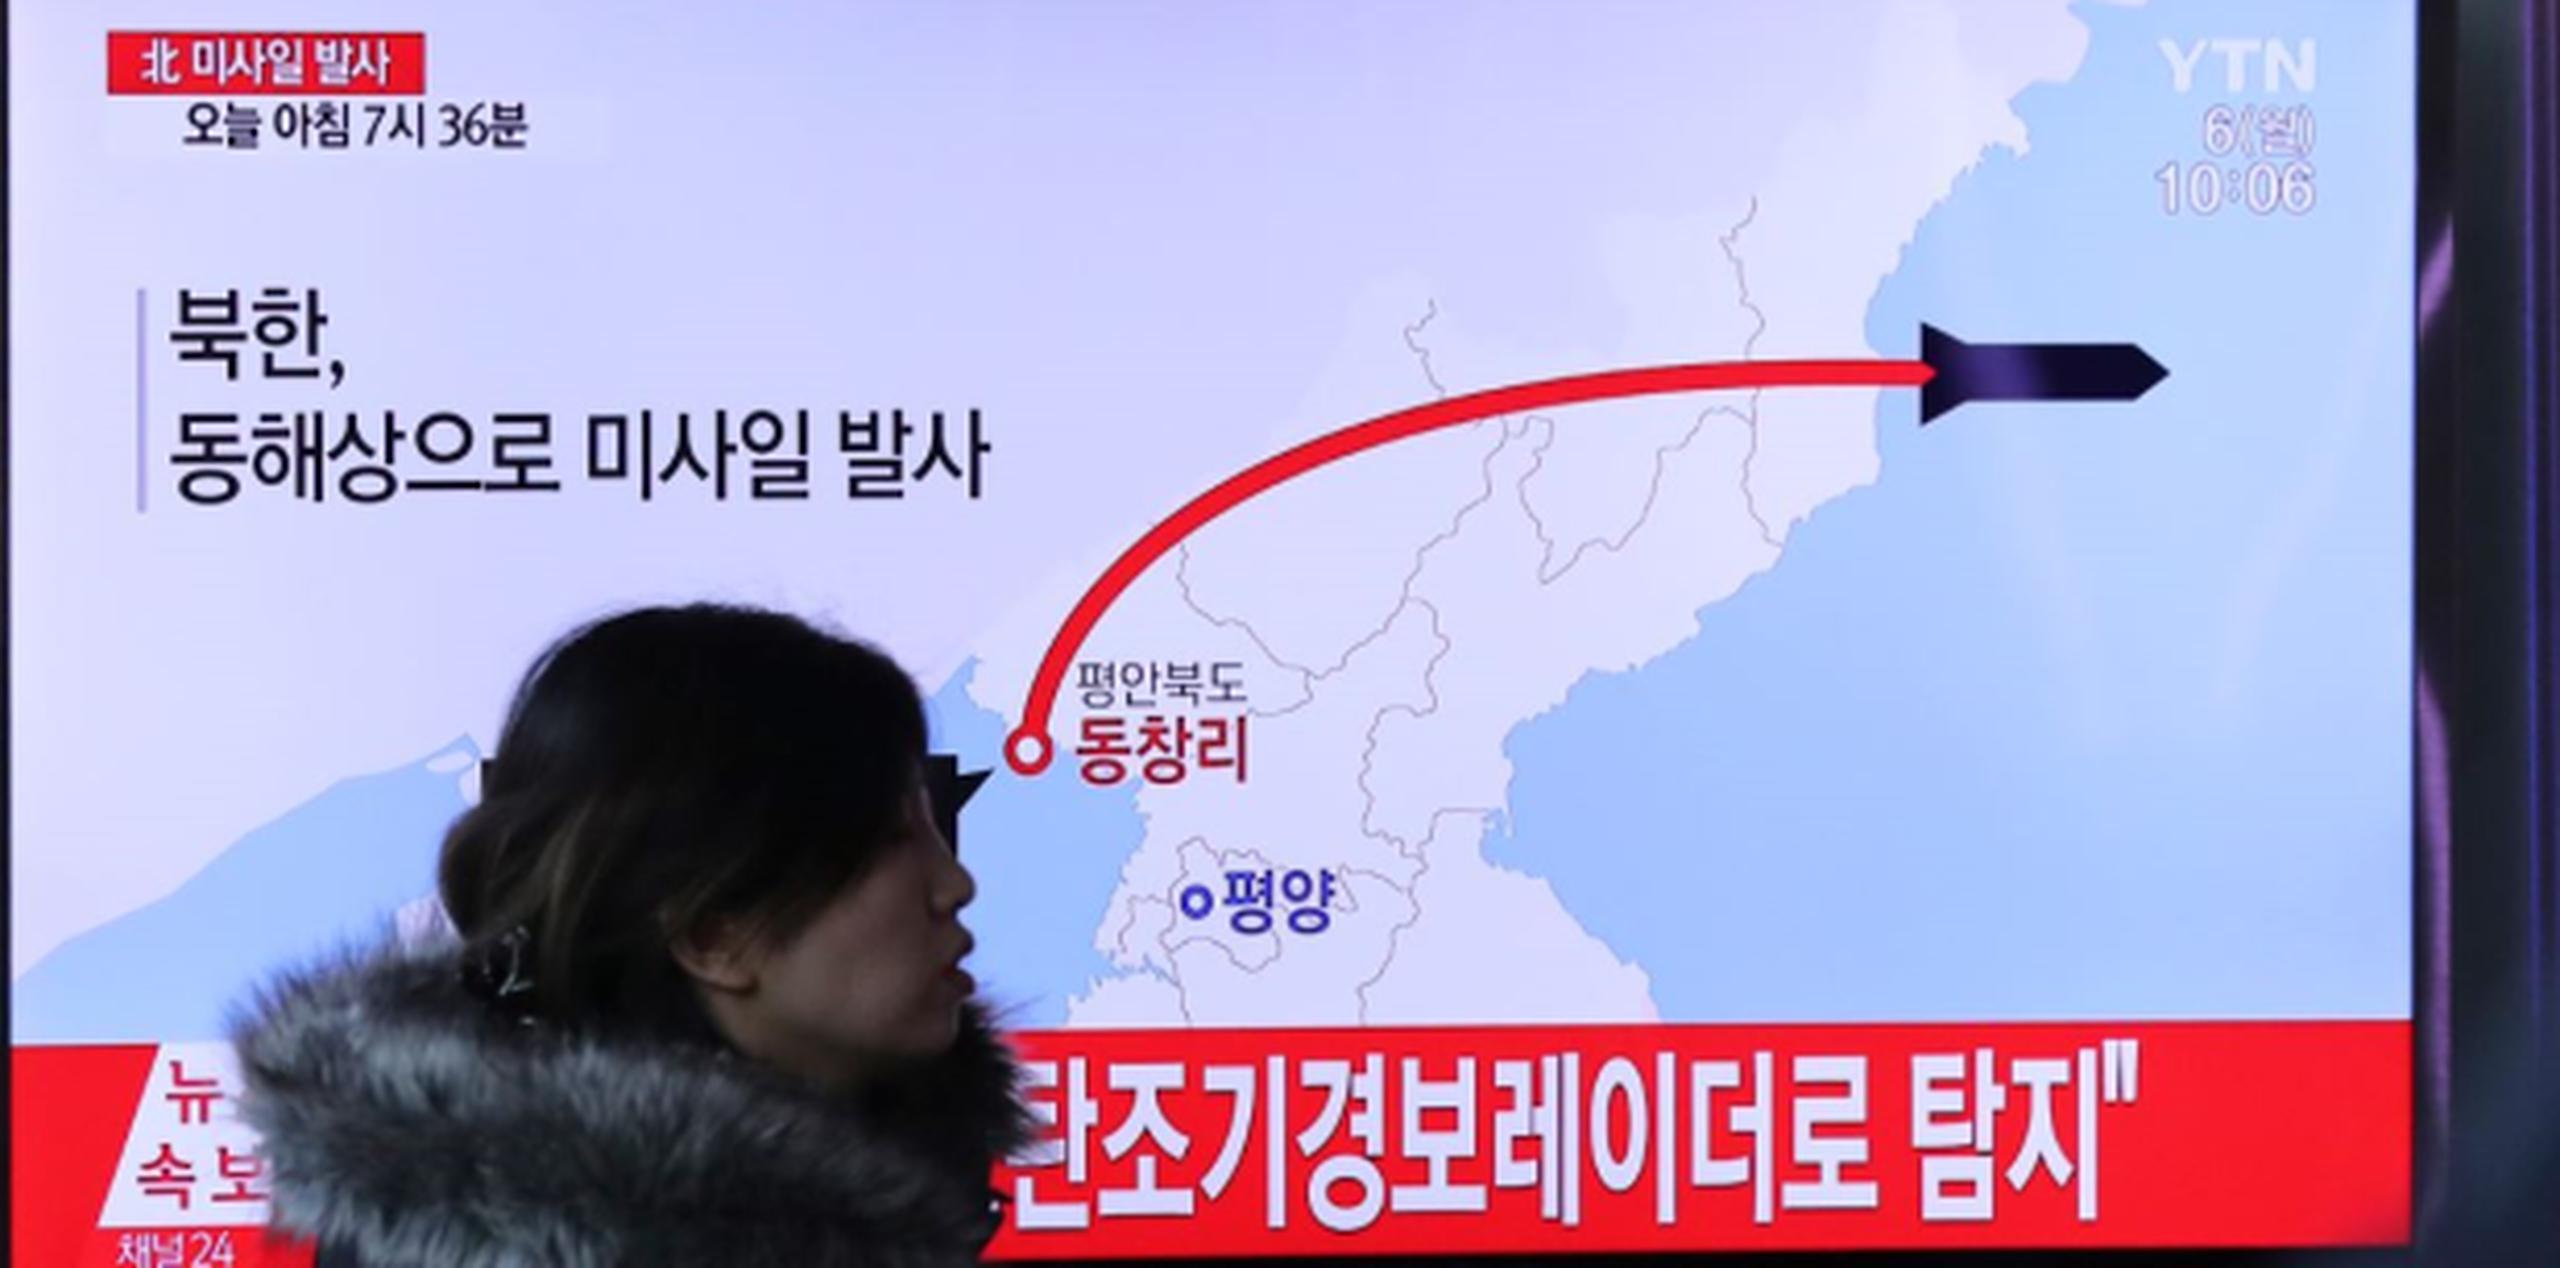 Los lanzamientos de prueba habrían sido una aparente reacción a los enormes ejercicios militares conjuntos de Washington y Seúl que Pyongyang insiste en que son un ensayo de invasión. (AP)